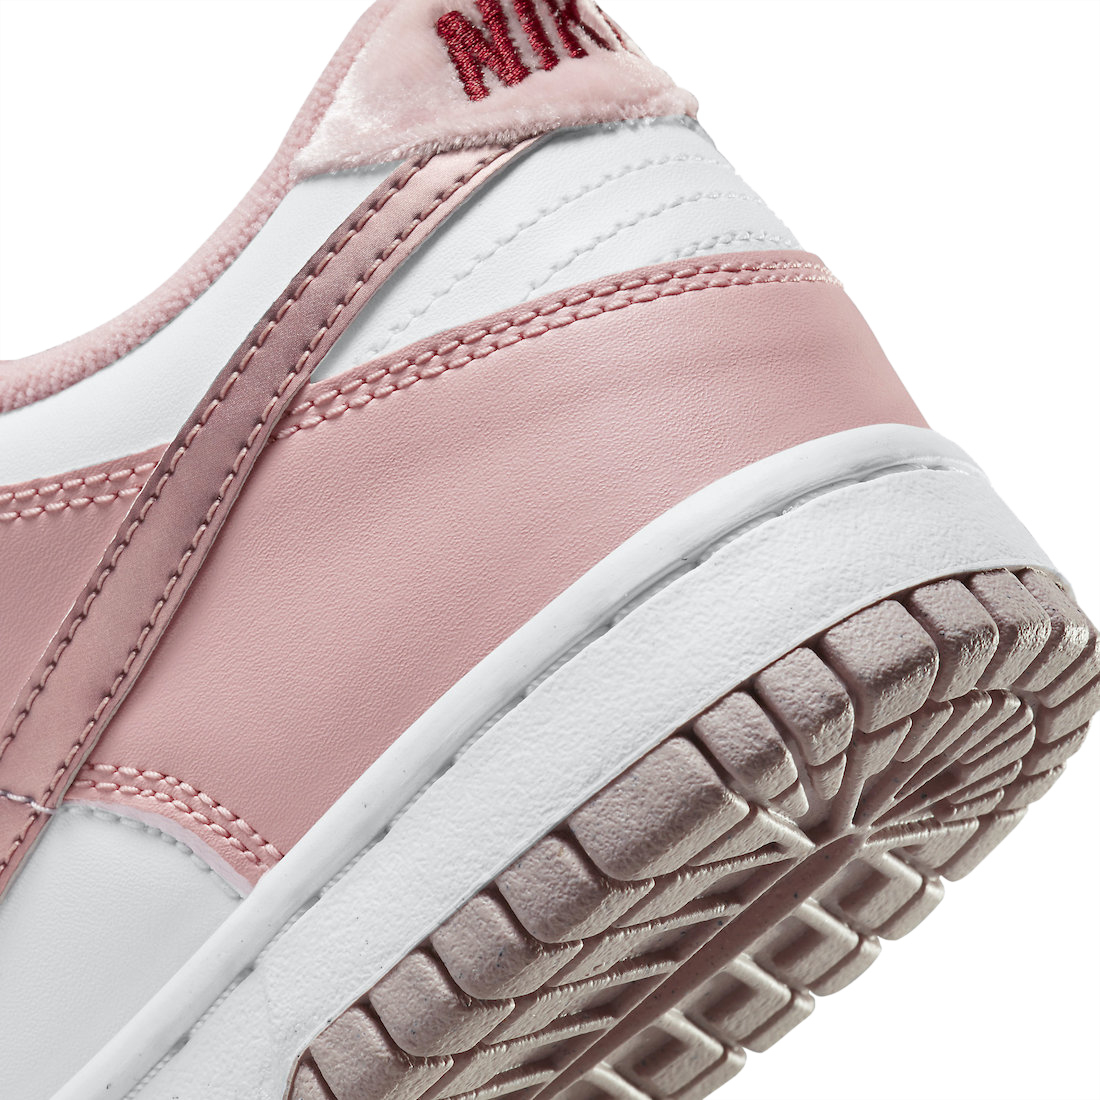 Nike Dunk Low GS Pink Velvet DO6485-600